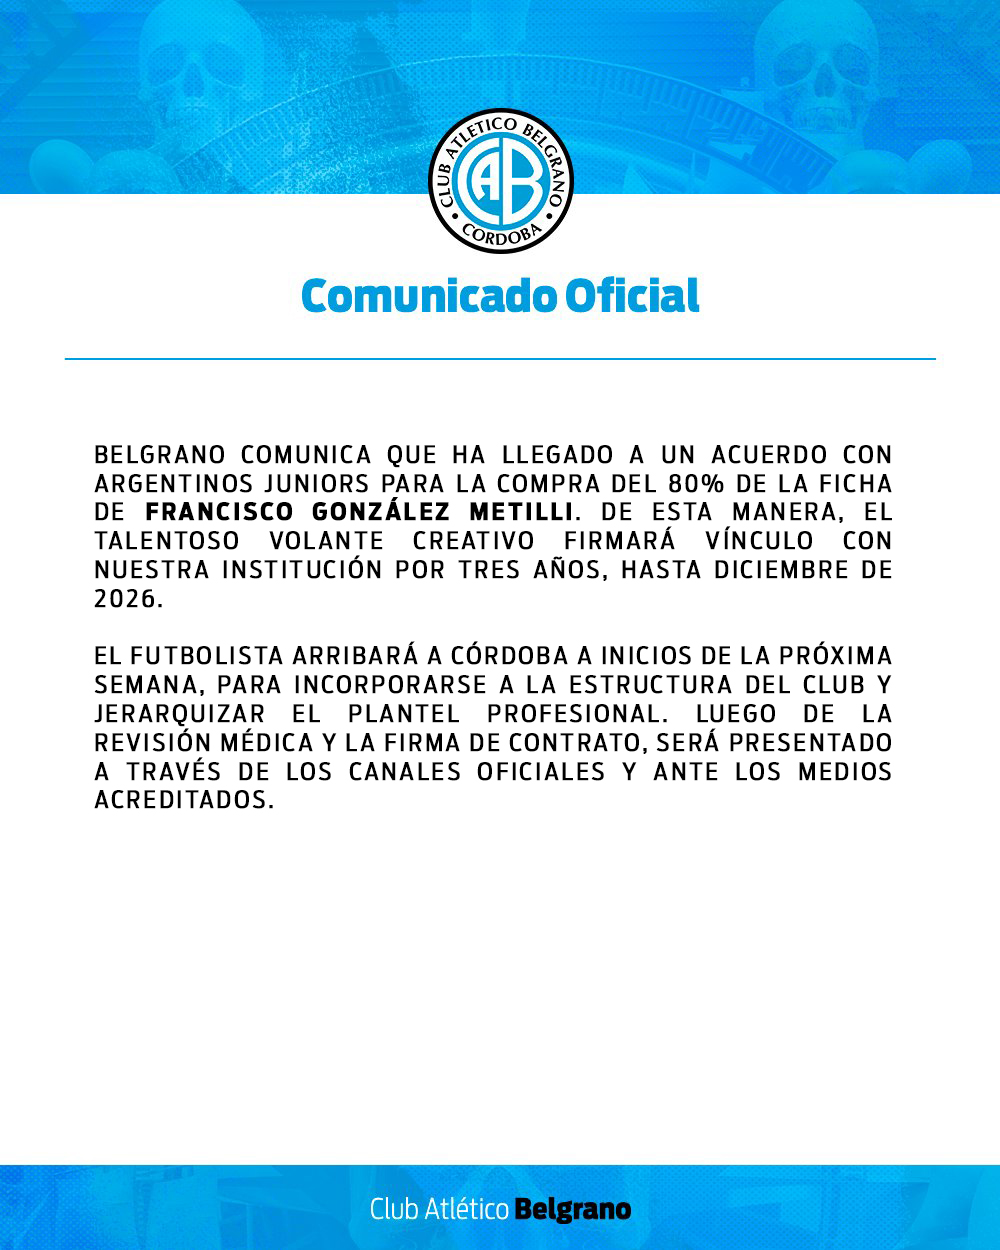 Belgrano oficializó el arribo de González Metilli | Canal Showsport